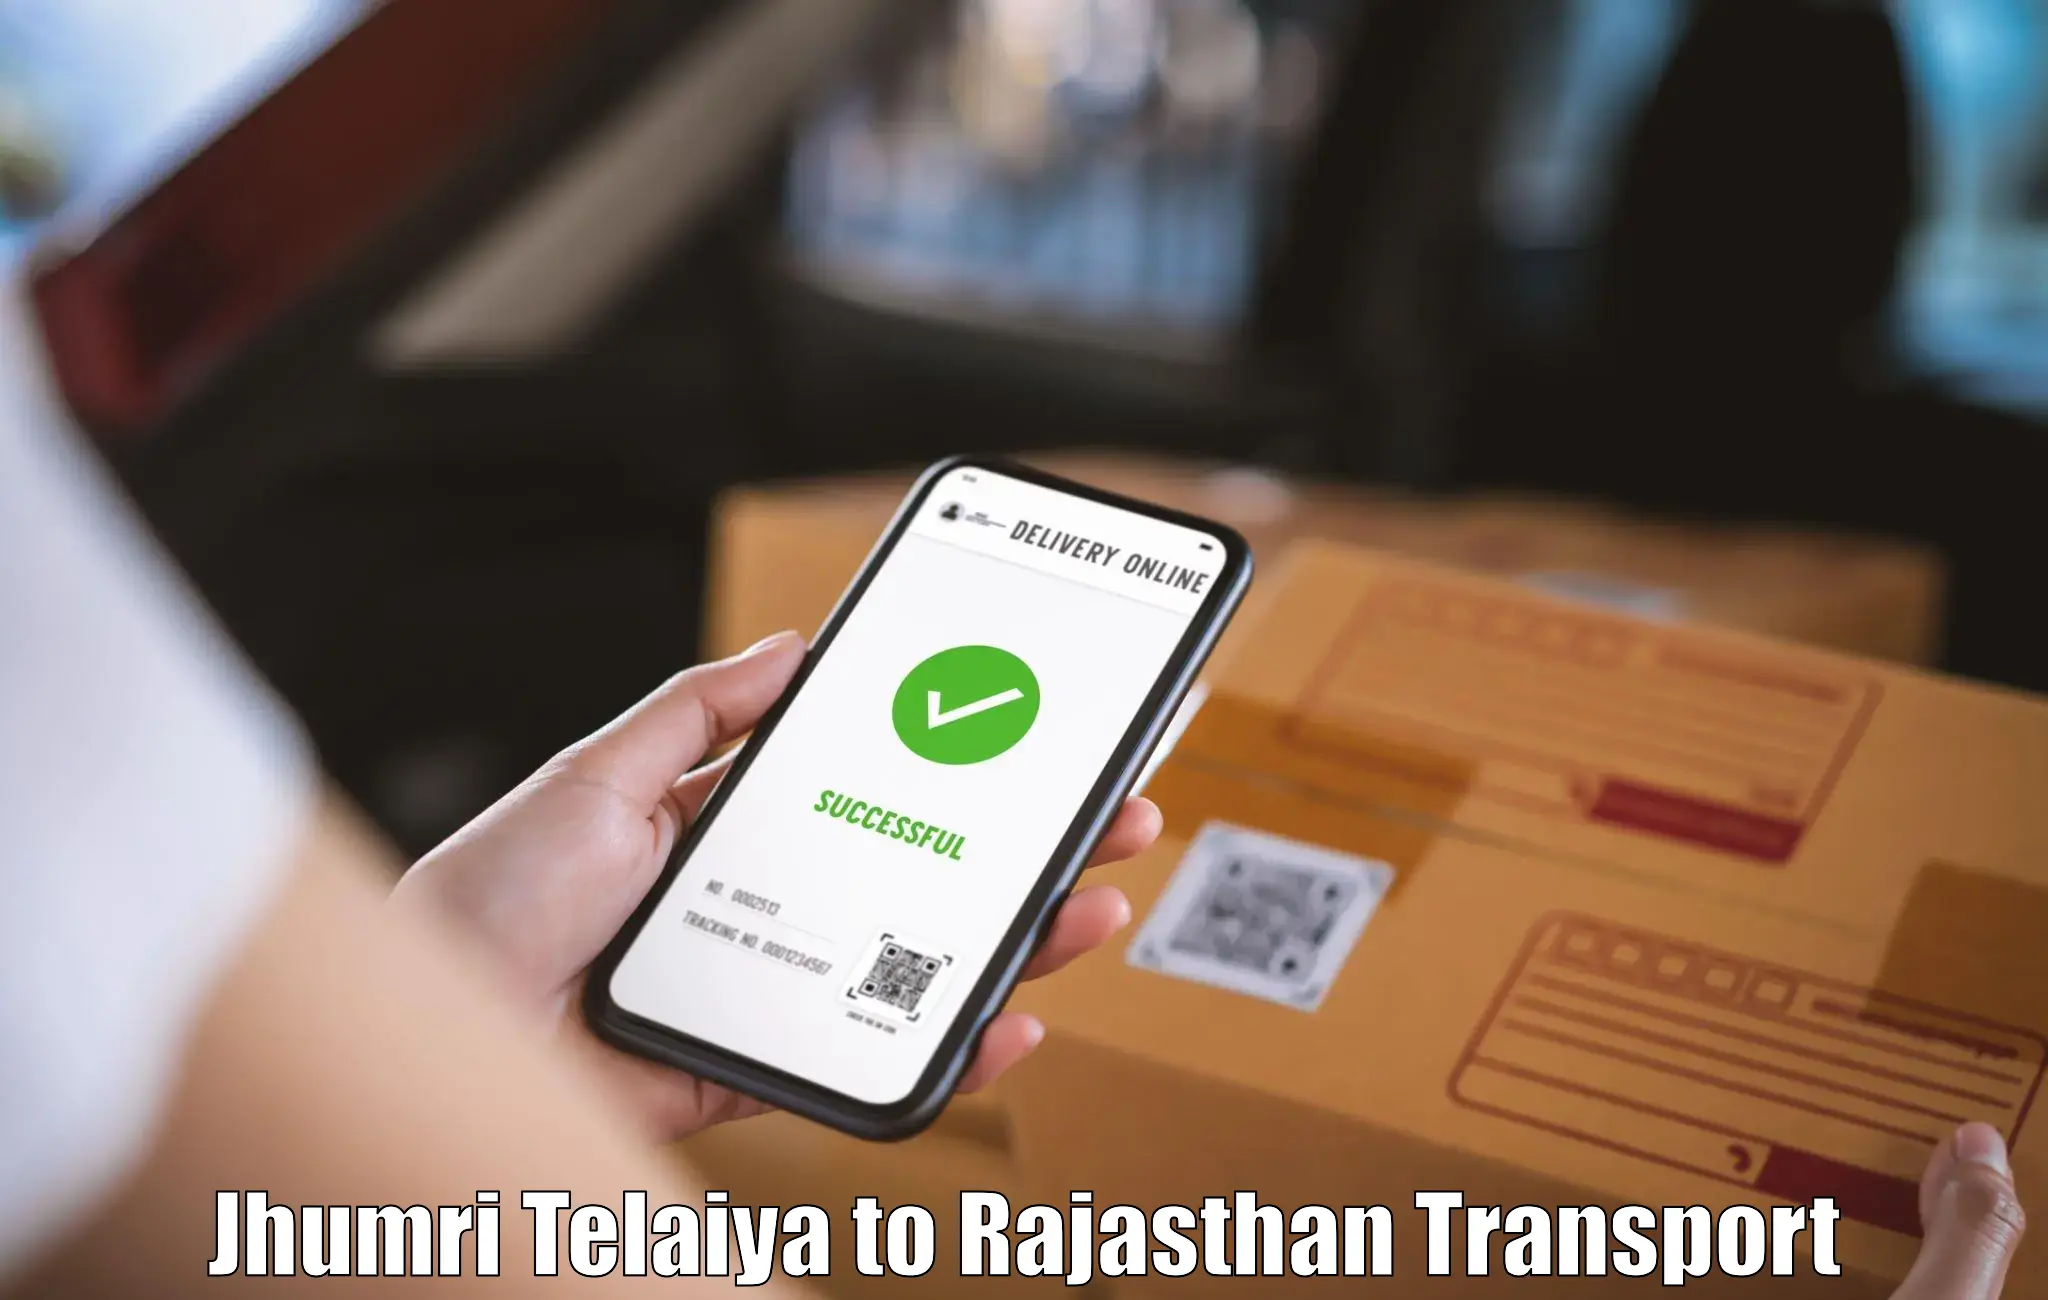 Daily transport service Jhumri Telaiya to Rajgarh Rajasthan